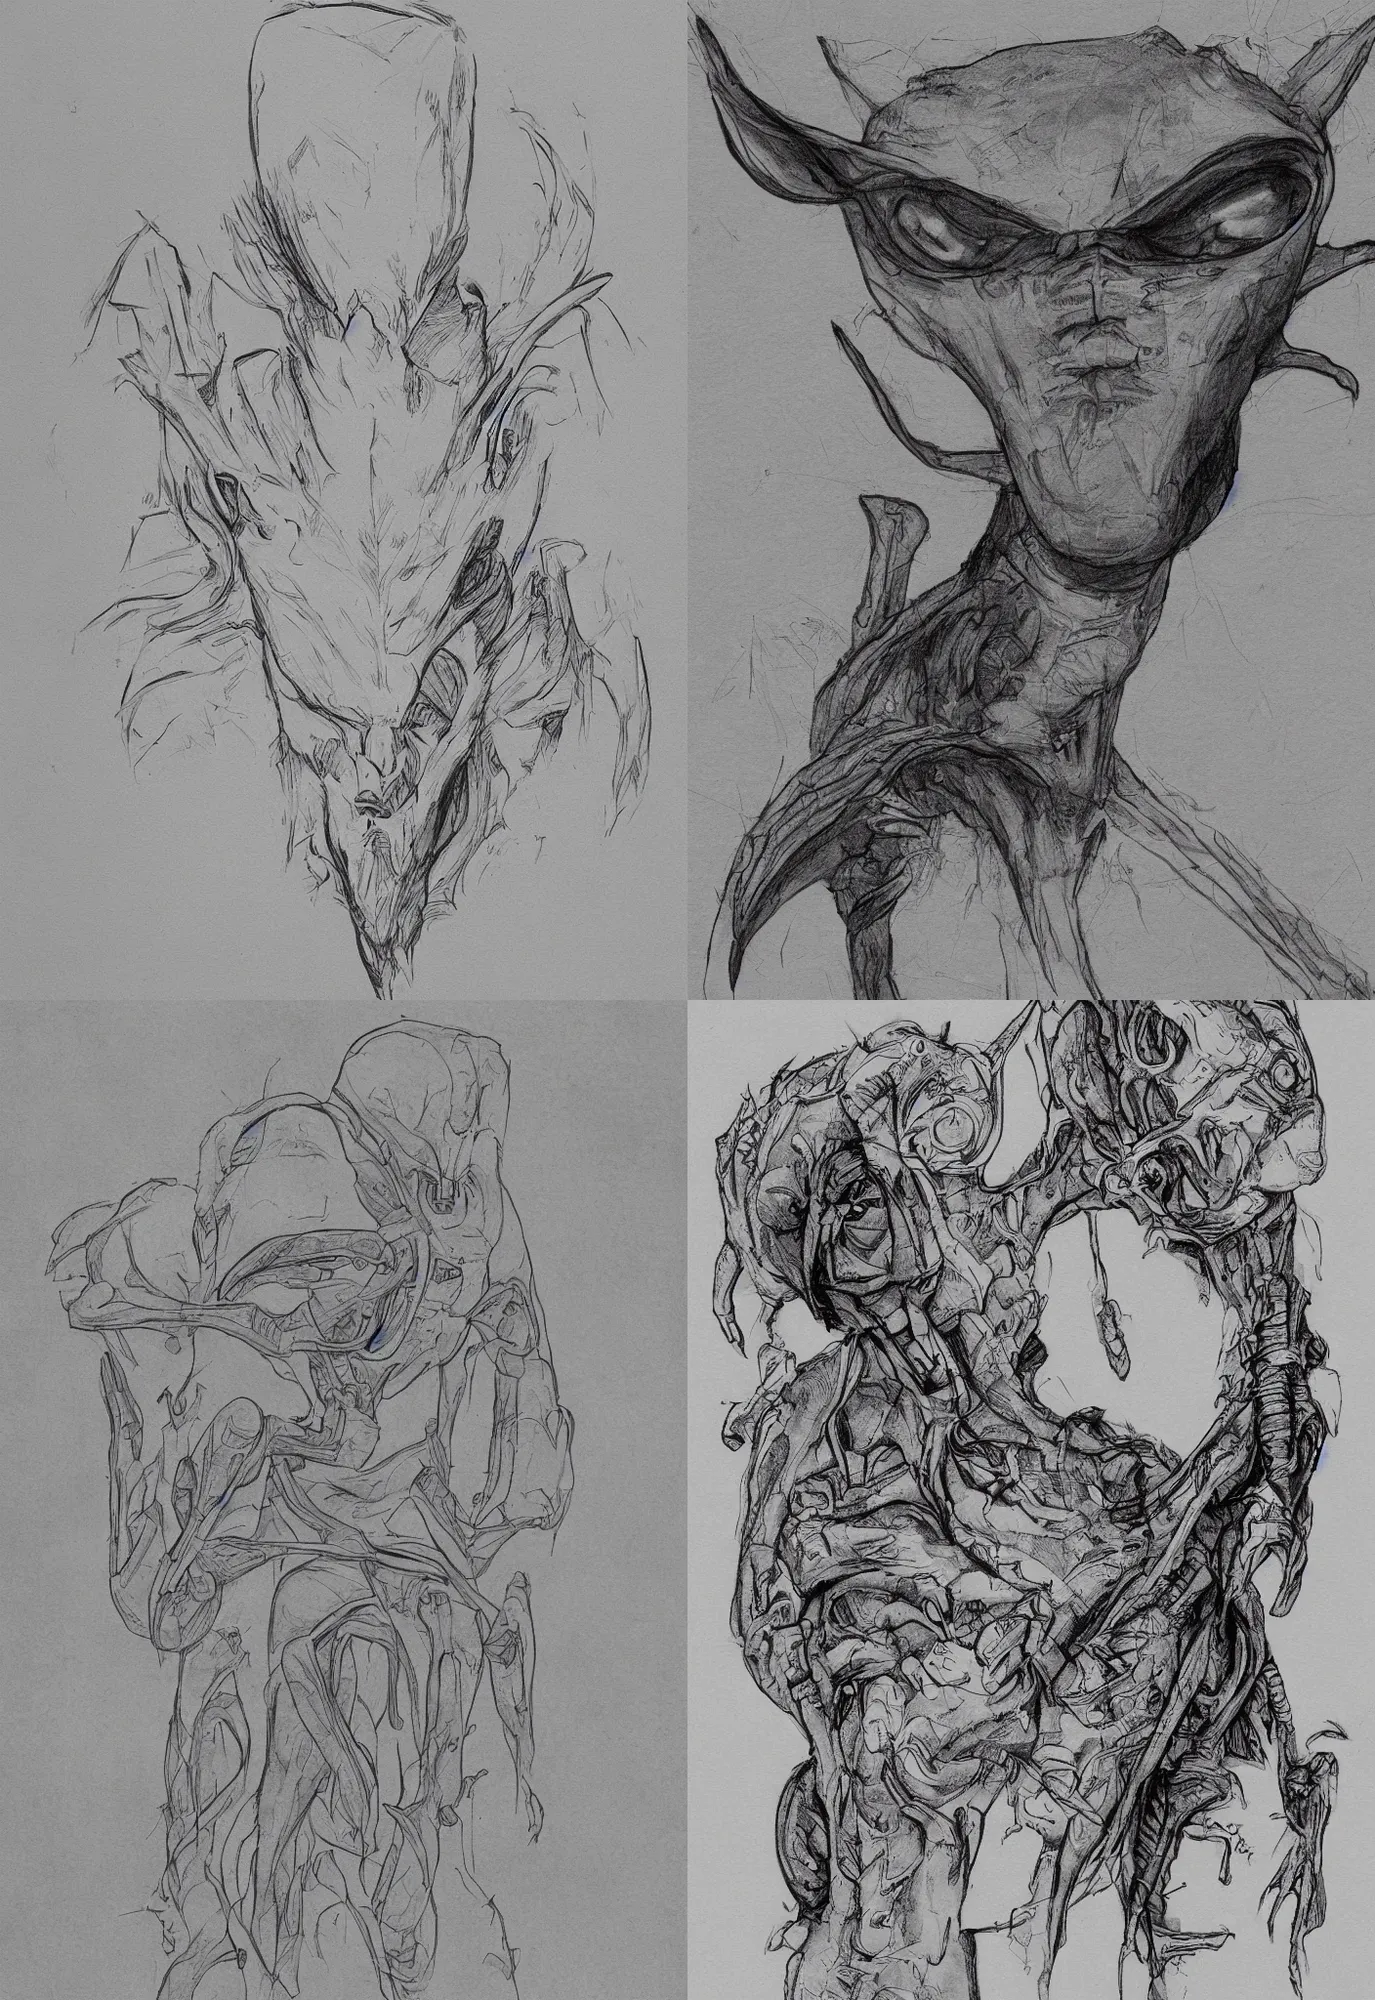 Prompt: basic alien, sketch, illustration